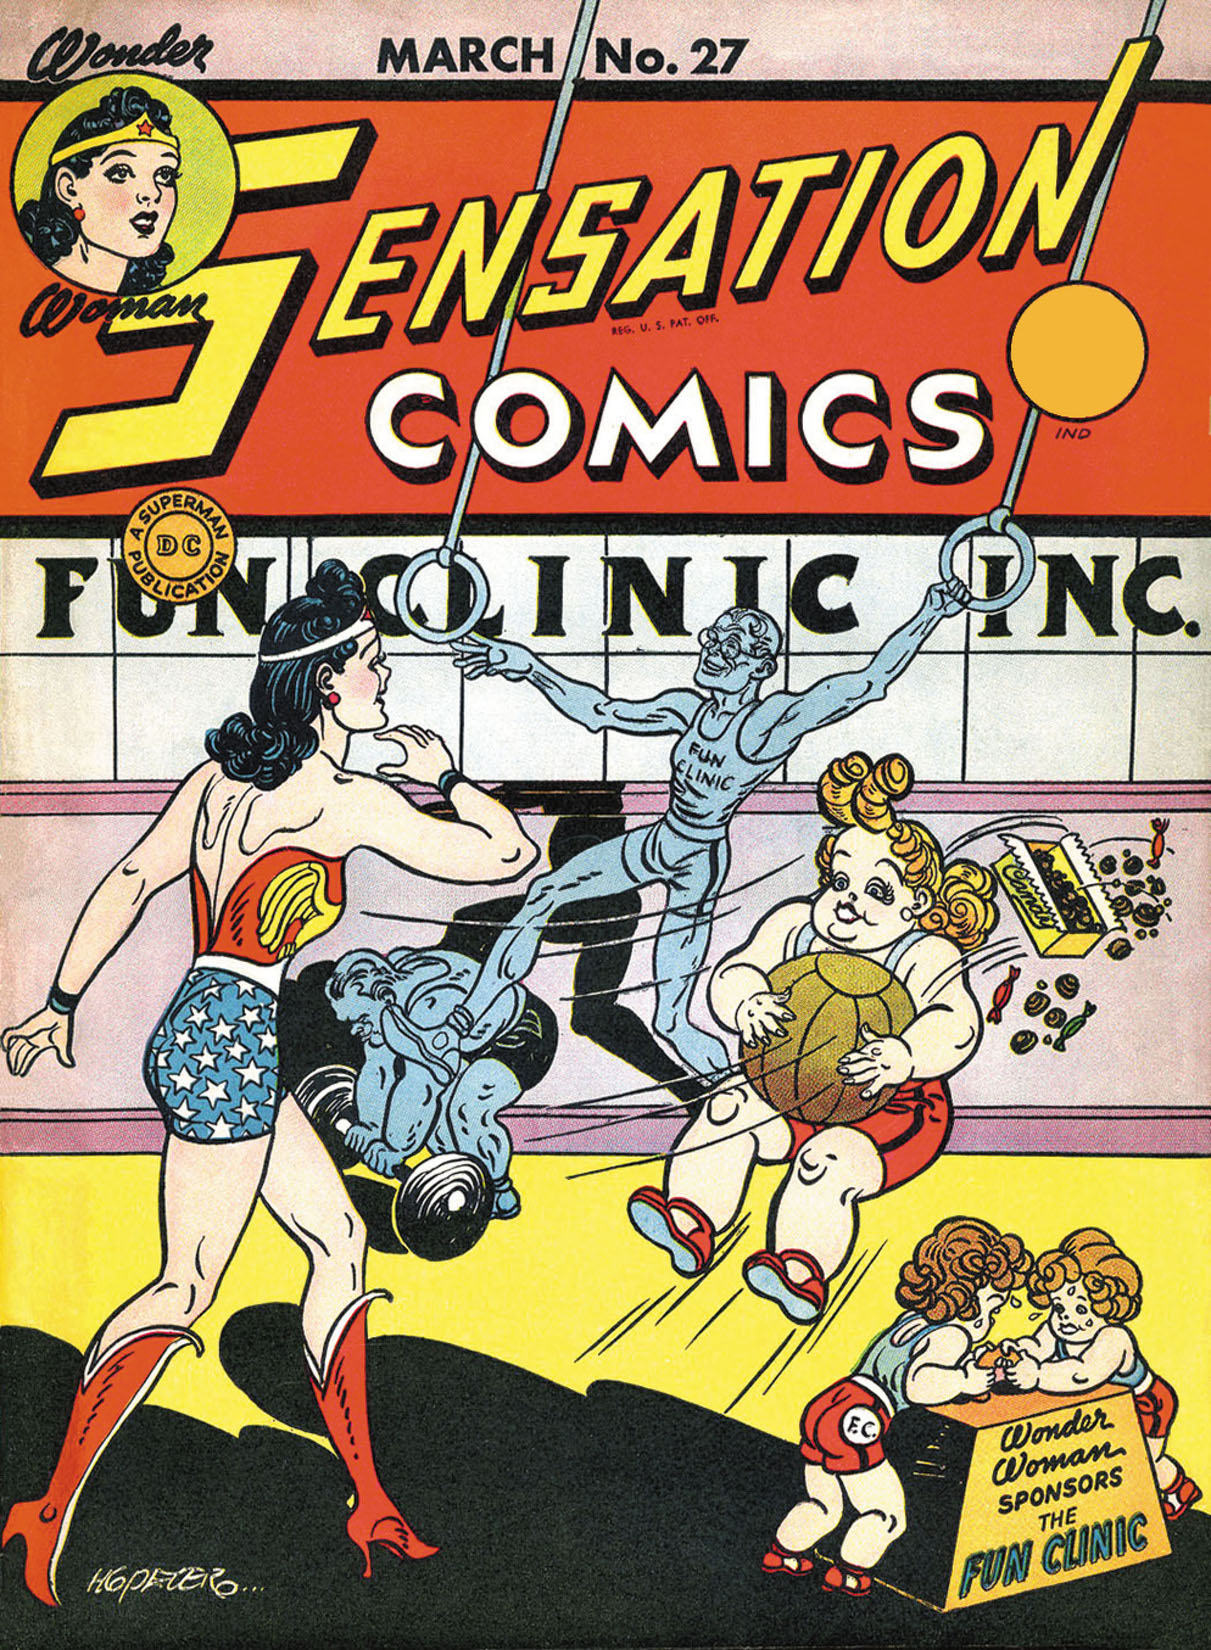 Sensation Comics #27 preview images